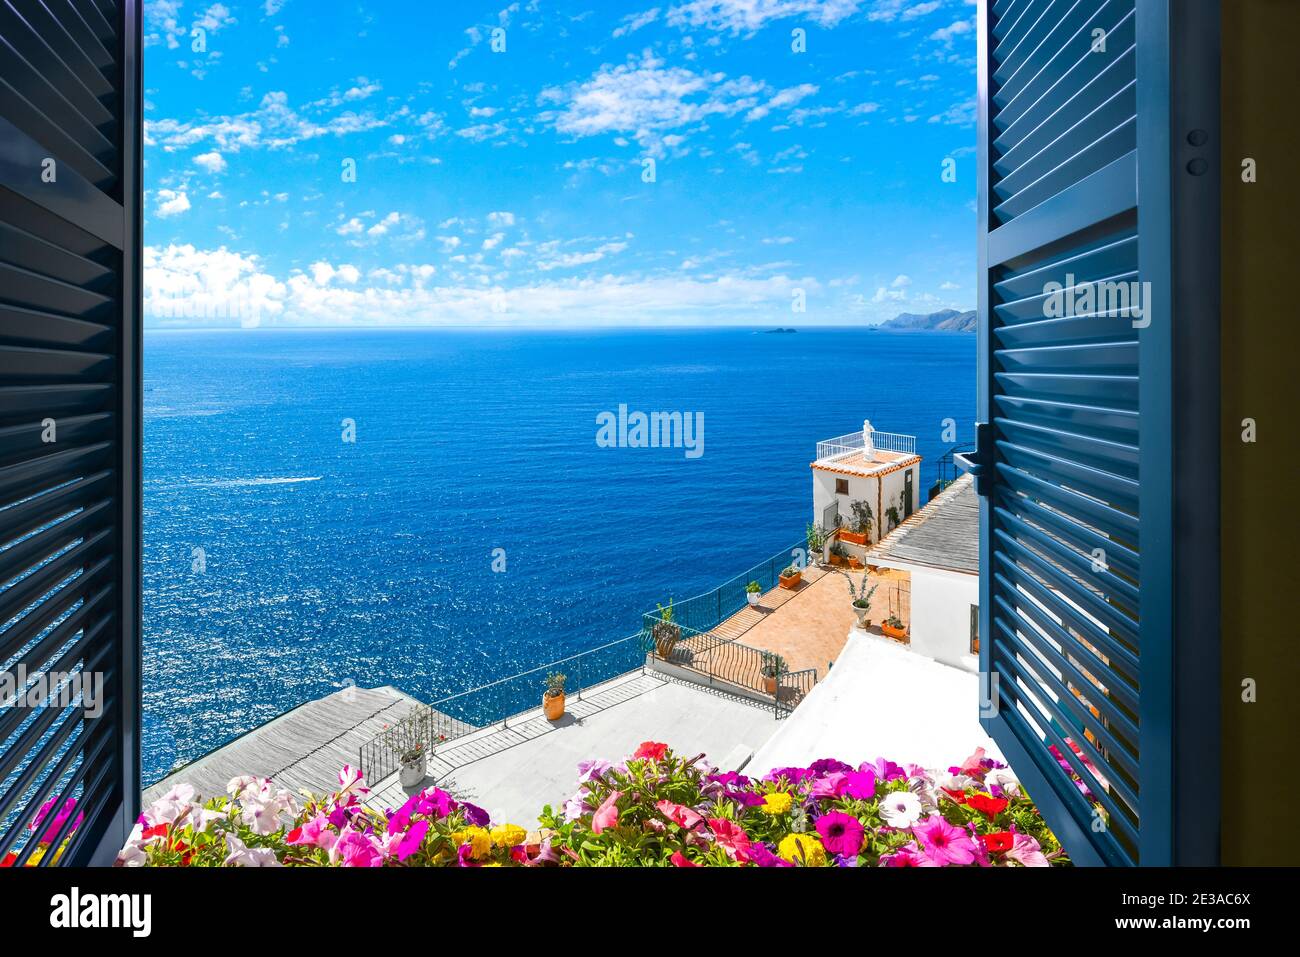 Vista panorámica del mar Mediterráneo desde una habitación a lo largo de la costa de Amalfi, cerca de Sorrento, Italia Foto de stock